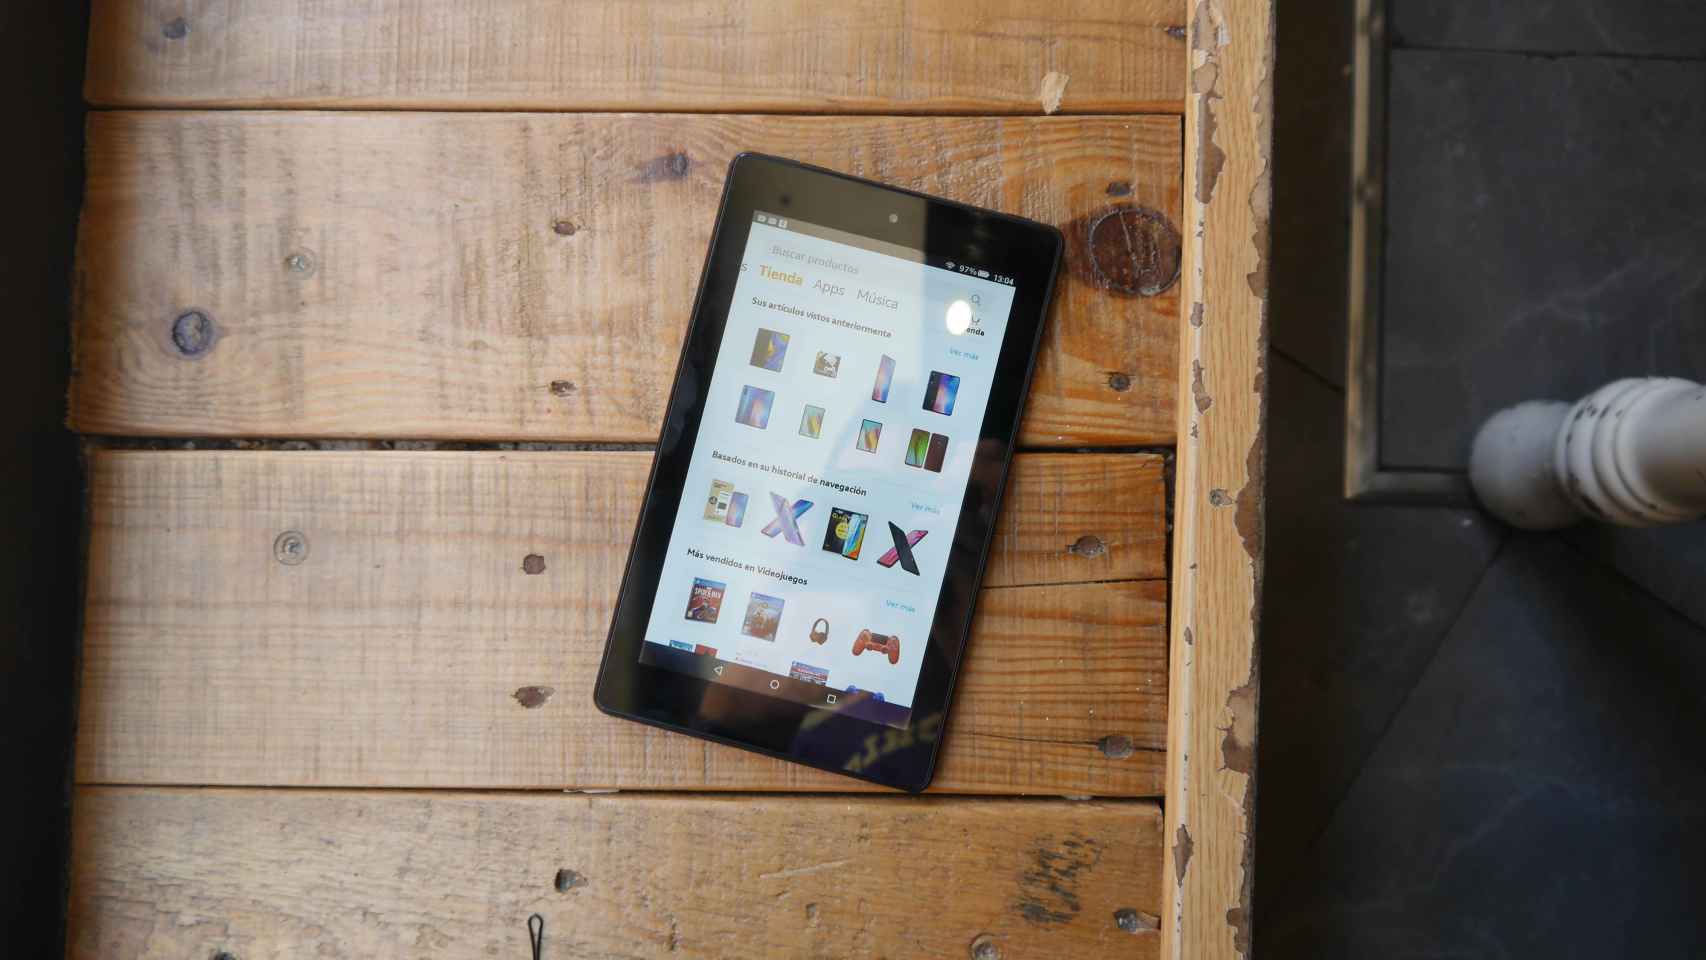 Análisis Amazon Kindle Fire 7 2019: una tablet básica y muy barata